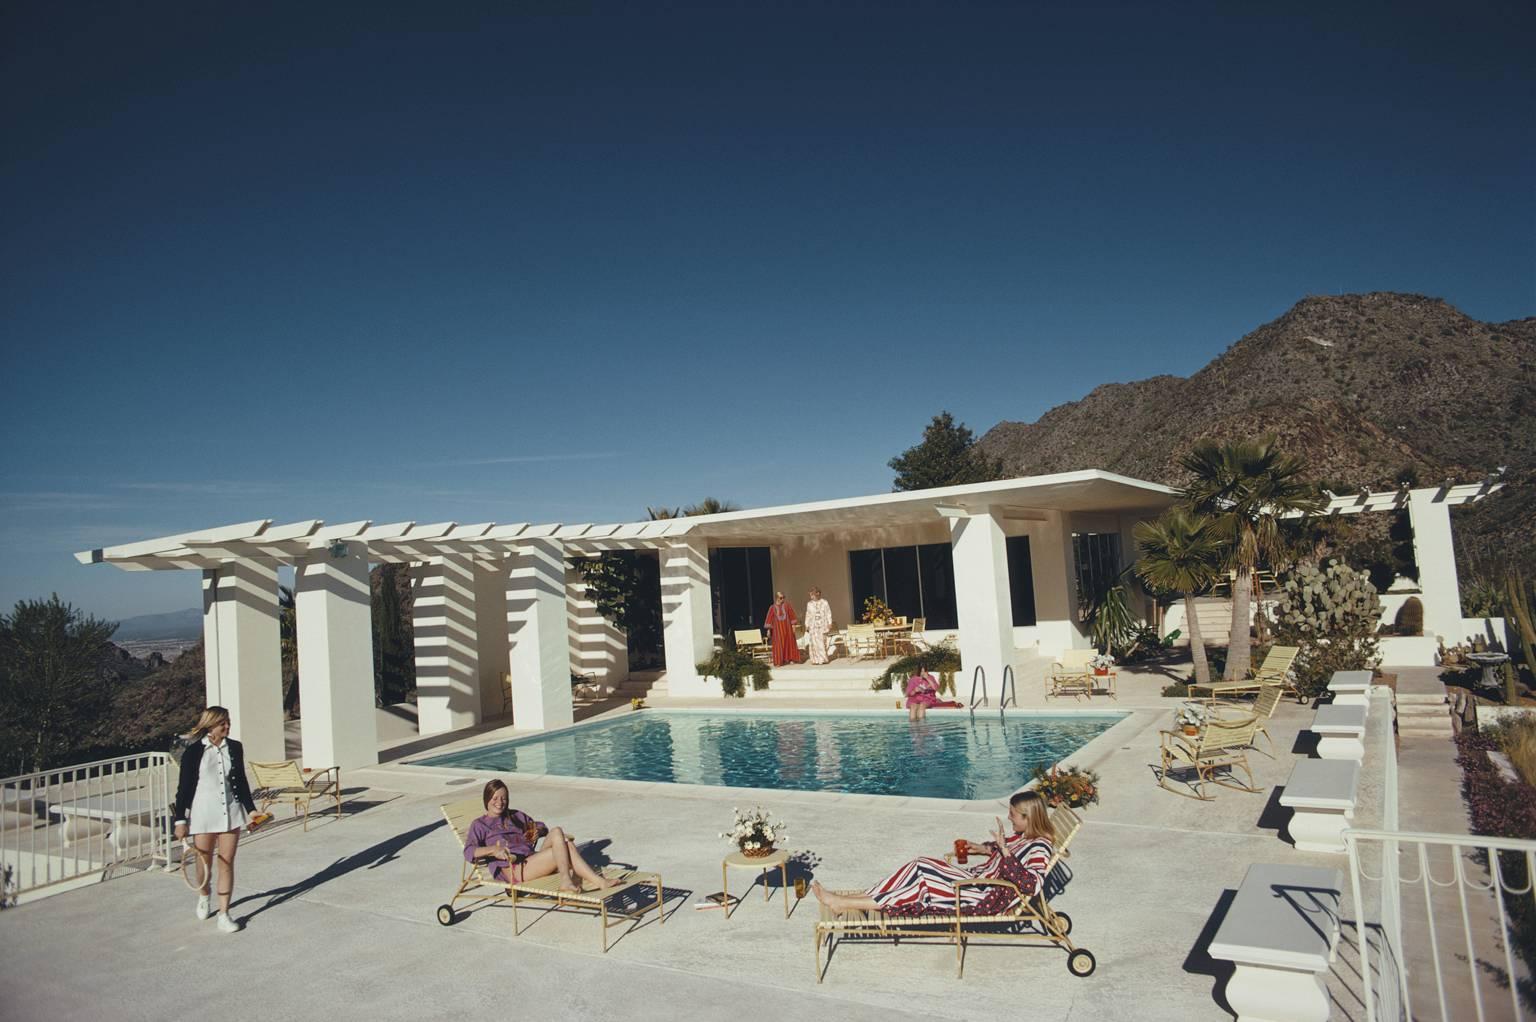 scottsdale Home" von Slim Aarons

Gäste am Pool im Haus von Wayne Beal in Scottsdale, Arizona, Januar 1973.

Man kann die Hitze kaum spüren!
Die Gäste entspannen sich im wunderschönen türkisfarbenen Wasser des Swimmingpools von Wayne Beal in